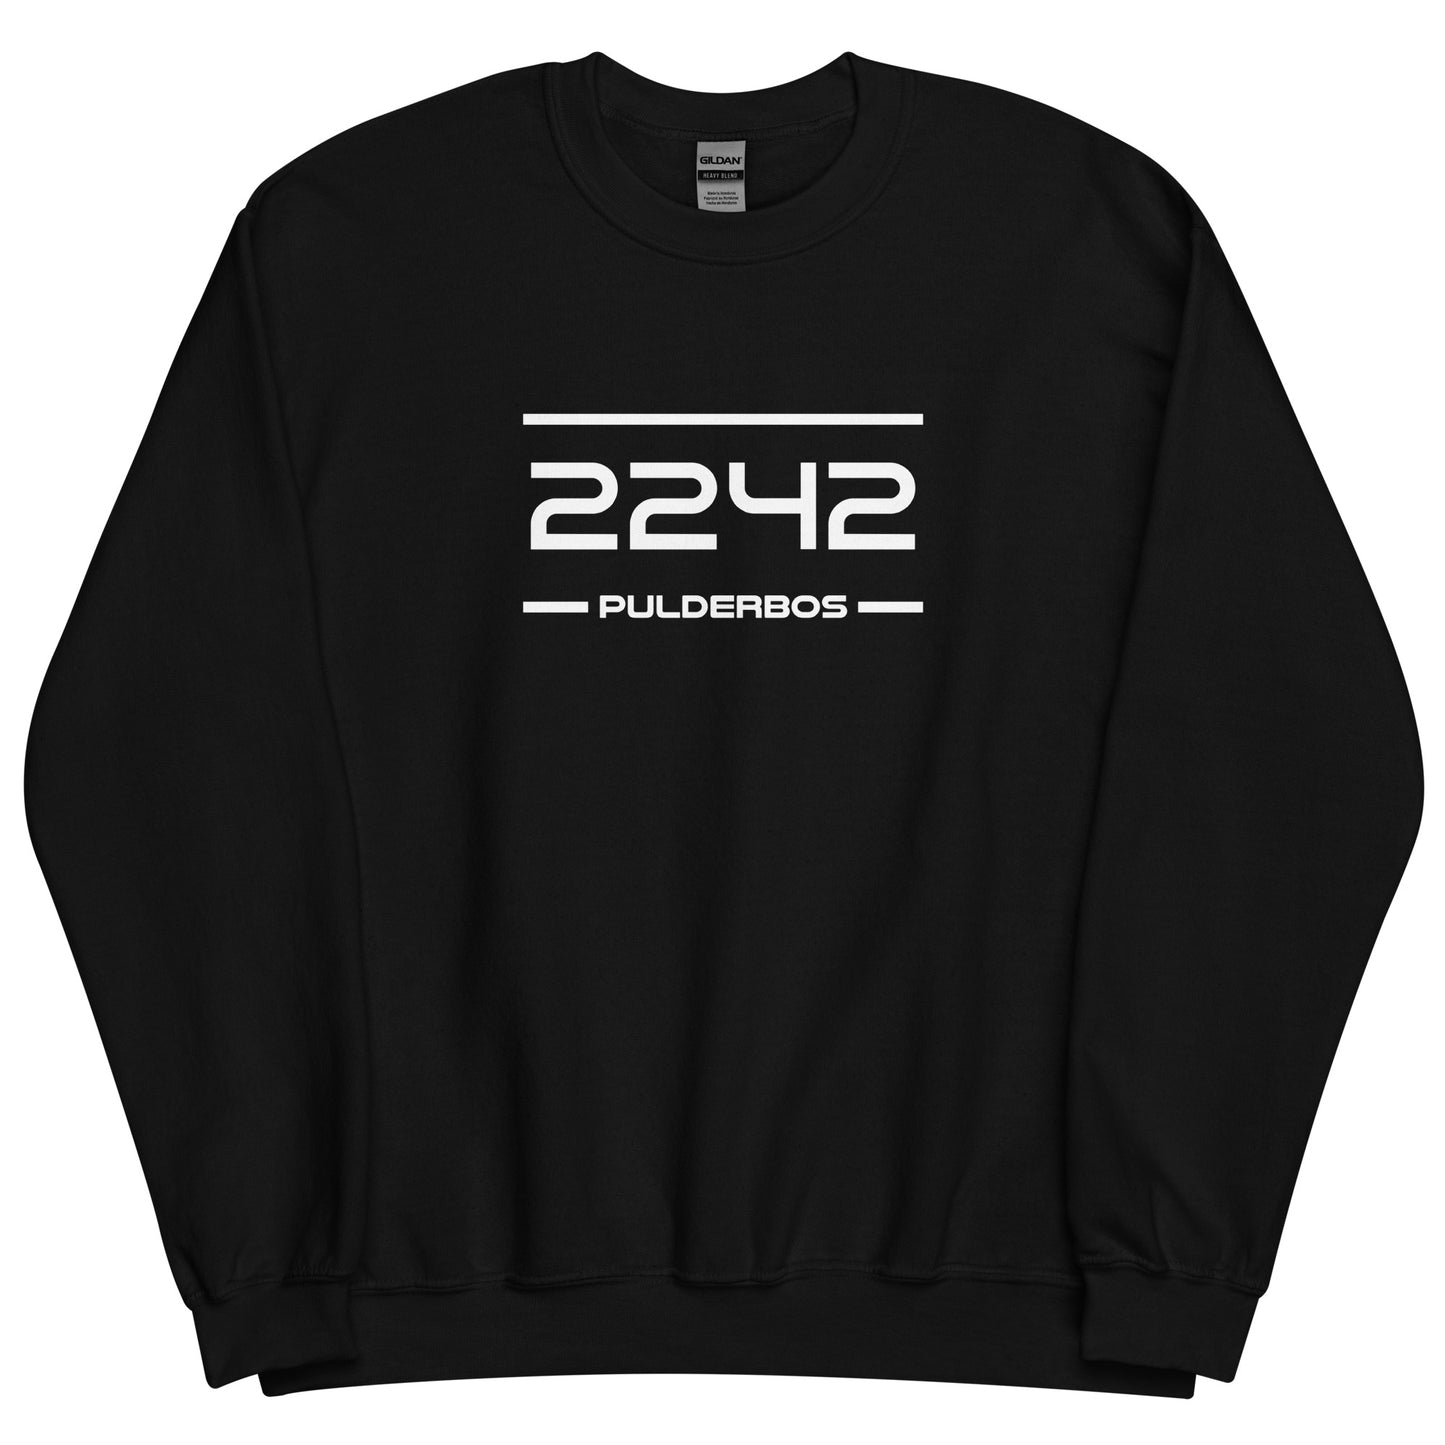 Sweater - 2242 - Pulderbos (M/V)